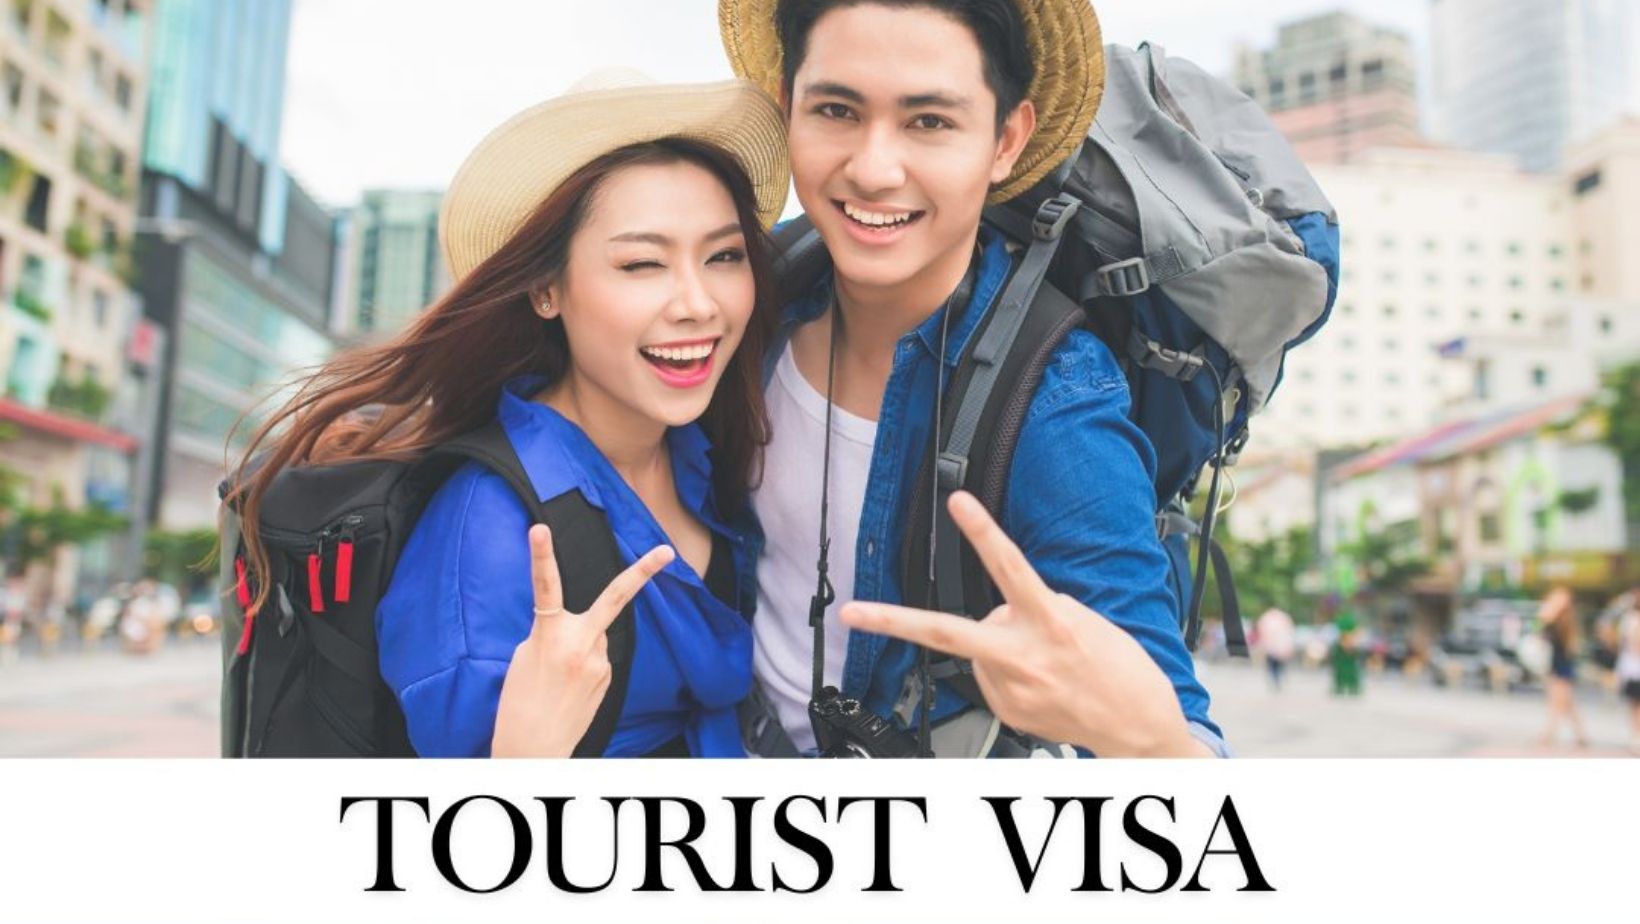 Tourist Visa - Australia